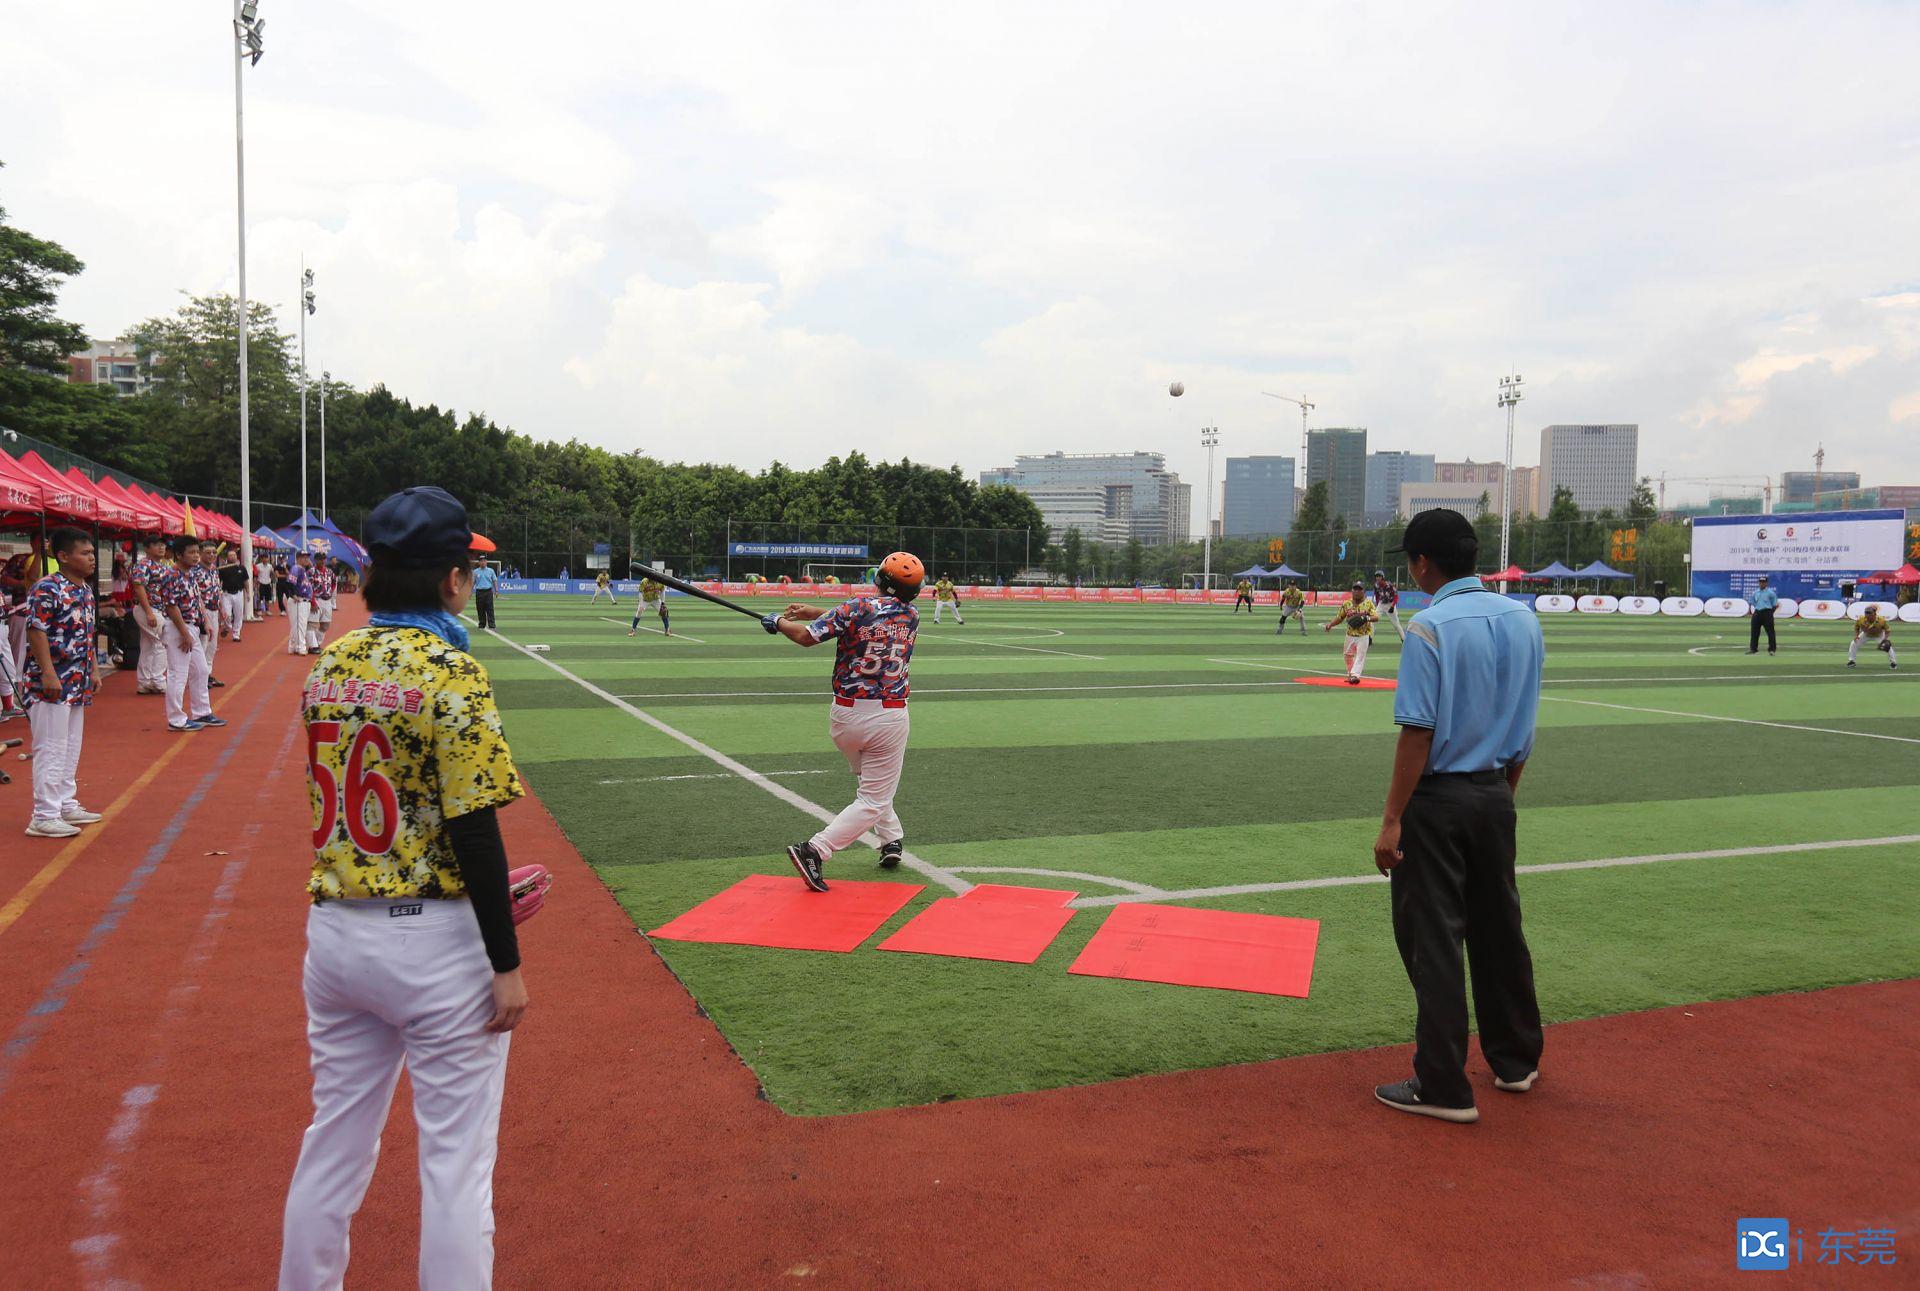 掷垒球图片 2019年“熊猫杯”中国慢投垒球企业联赛东莞协会“广东海纳”分站赛在松山湖打响